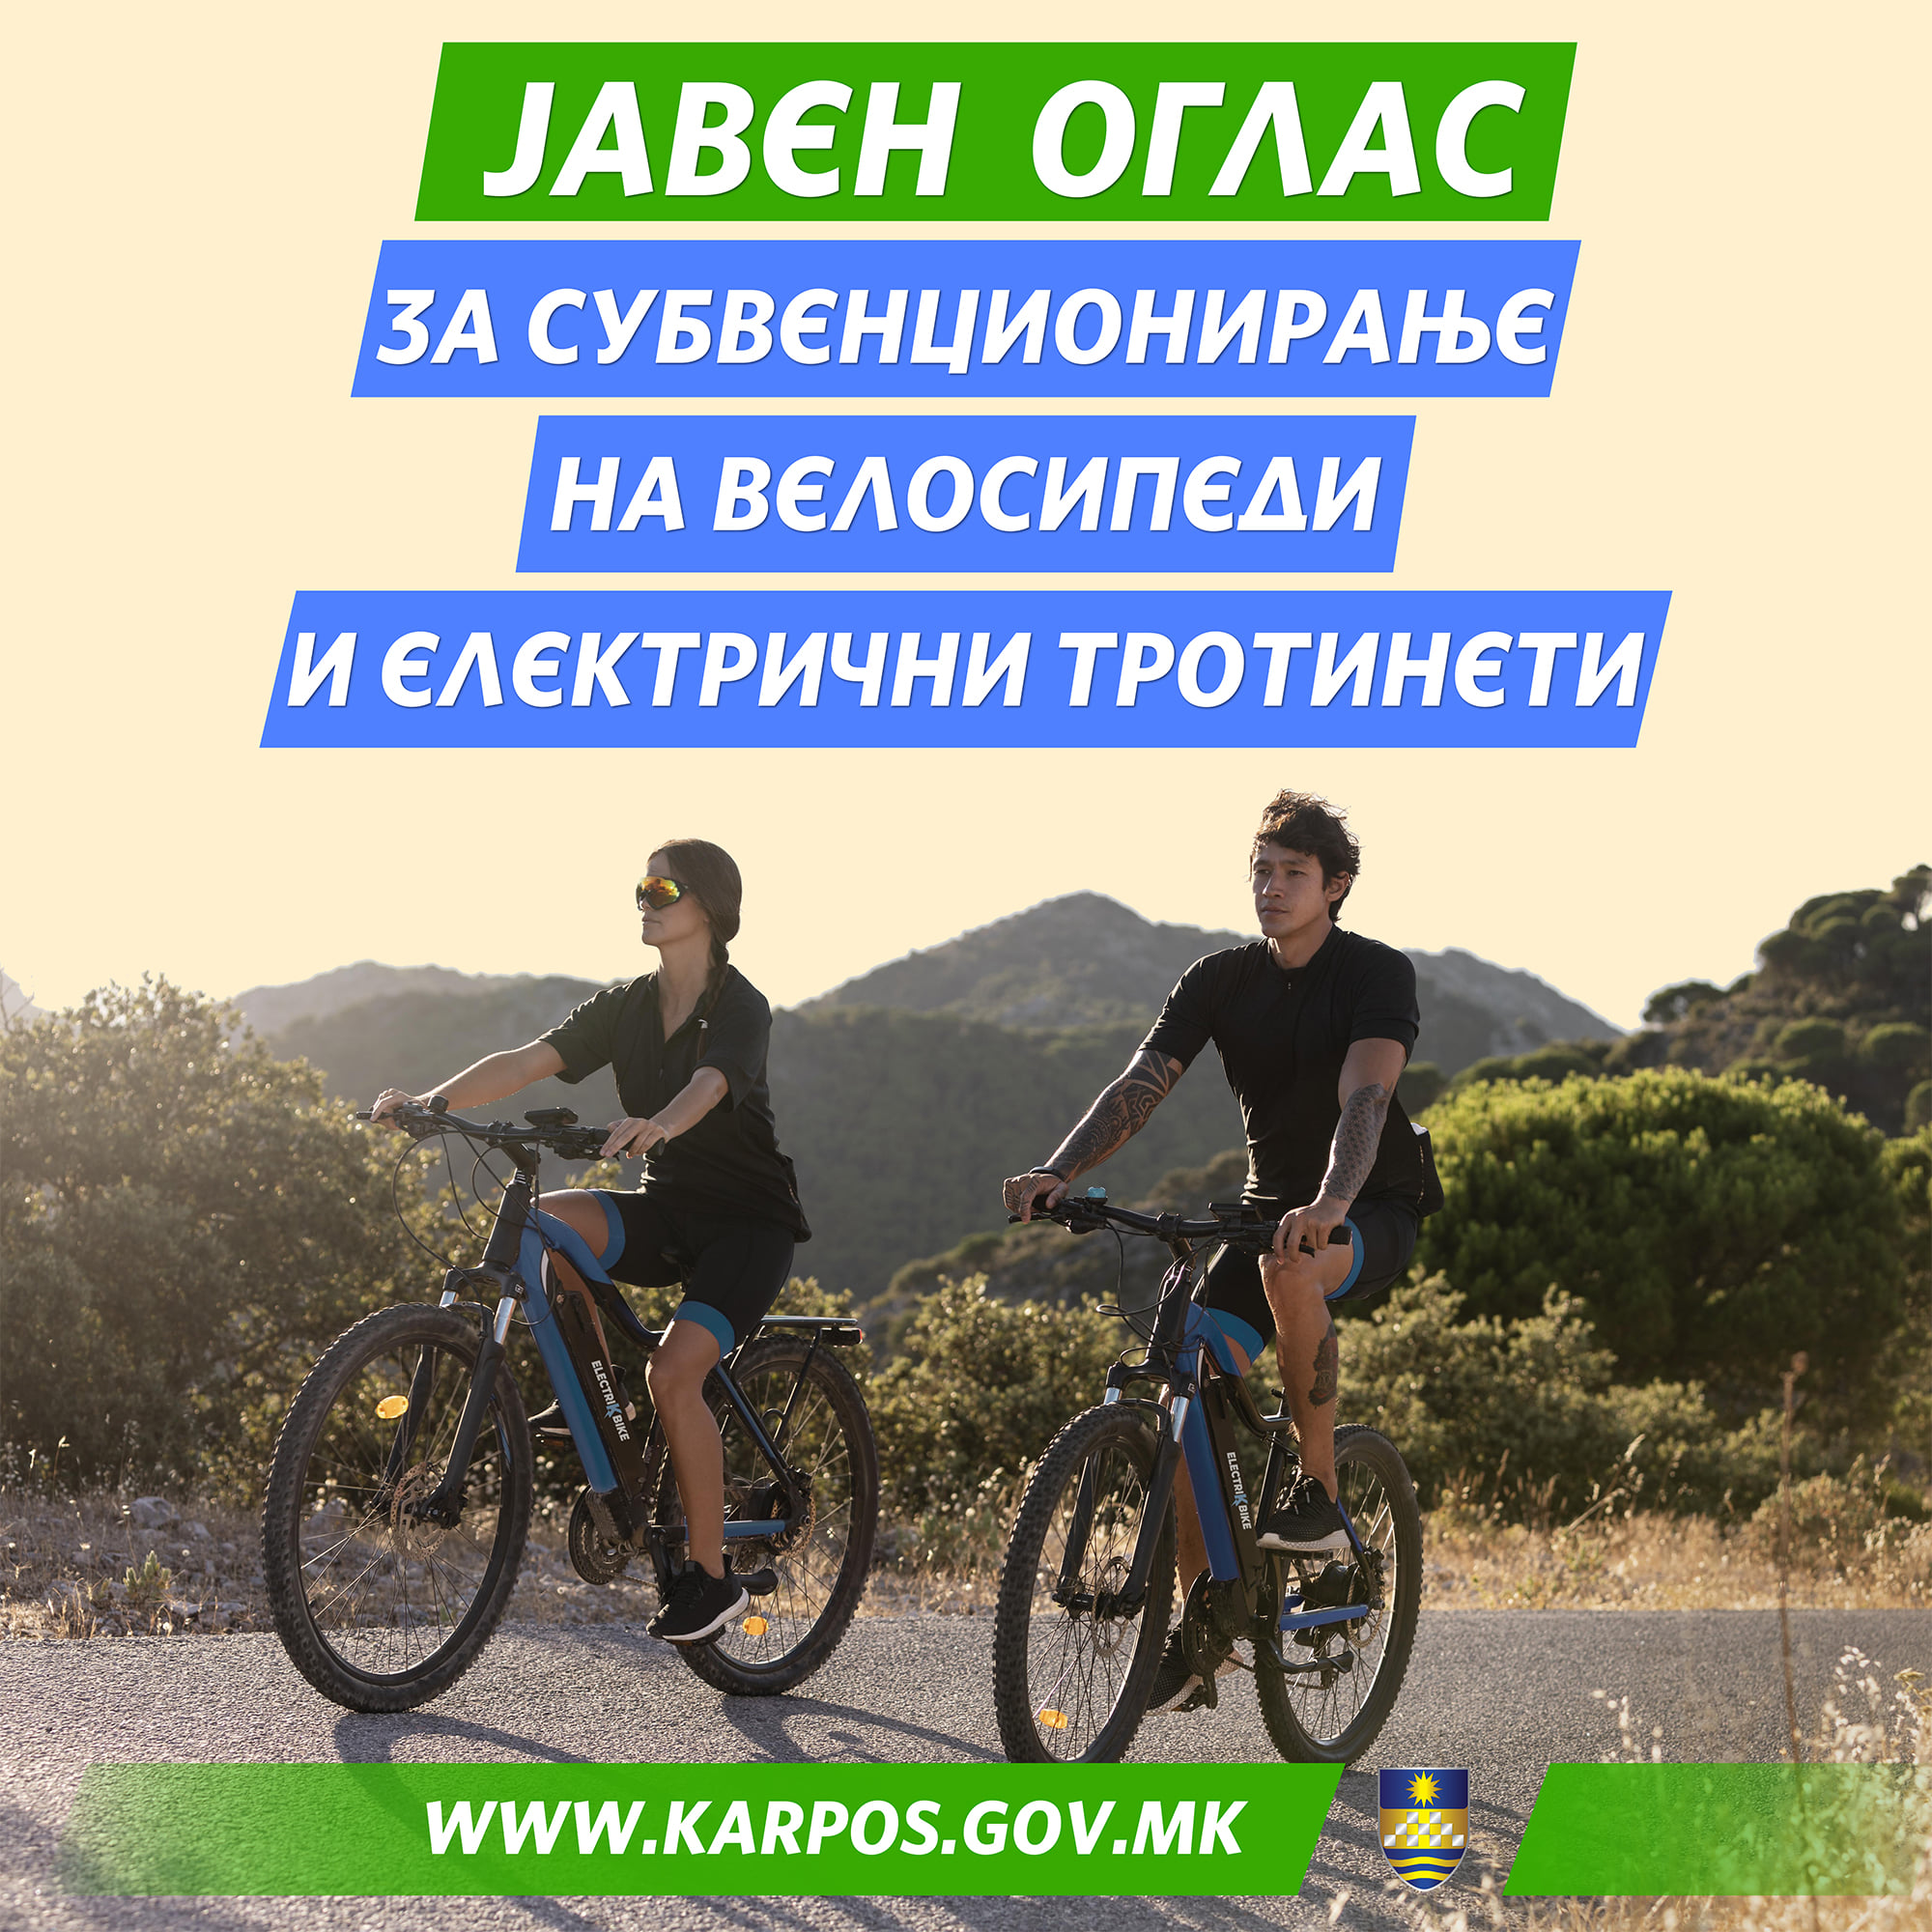 Општина Карпош ќе субвенционира за купување велосипеди и електрични тротинети